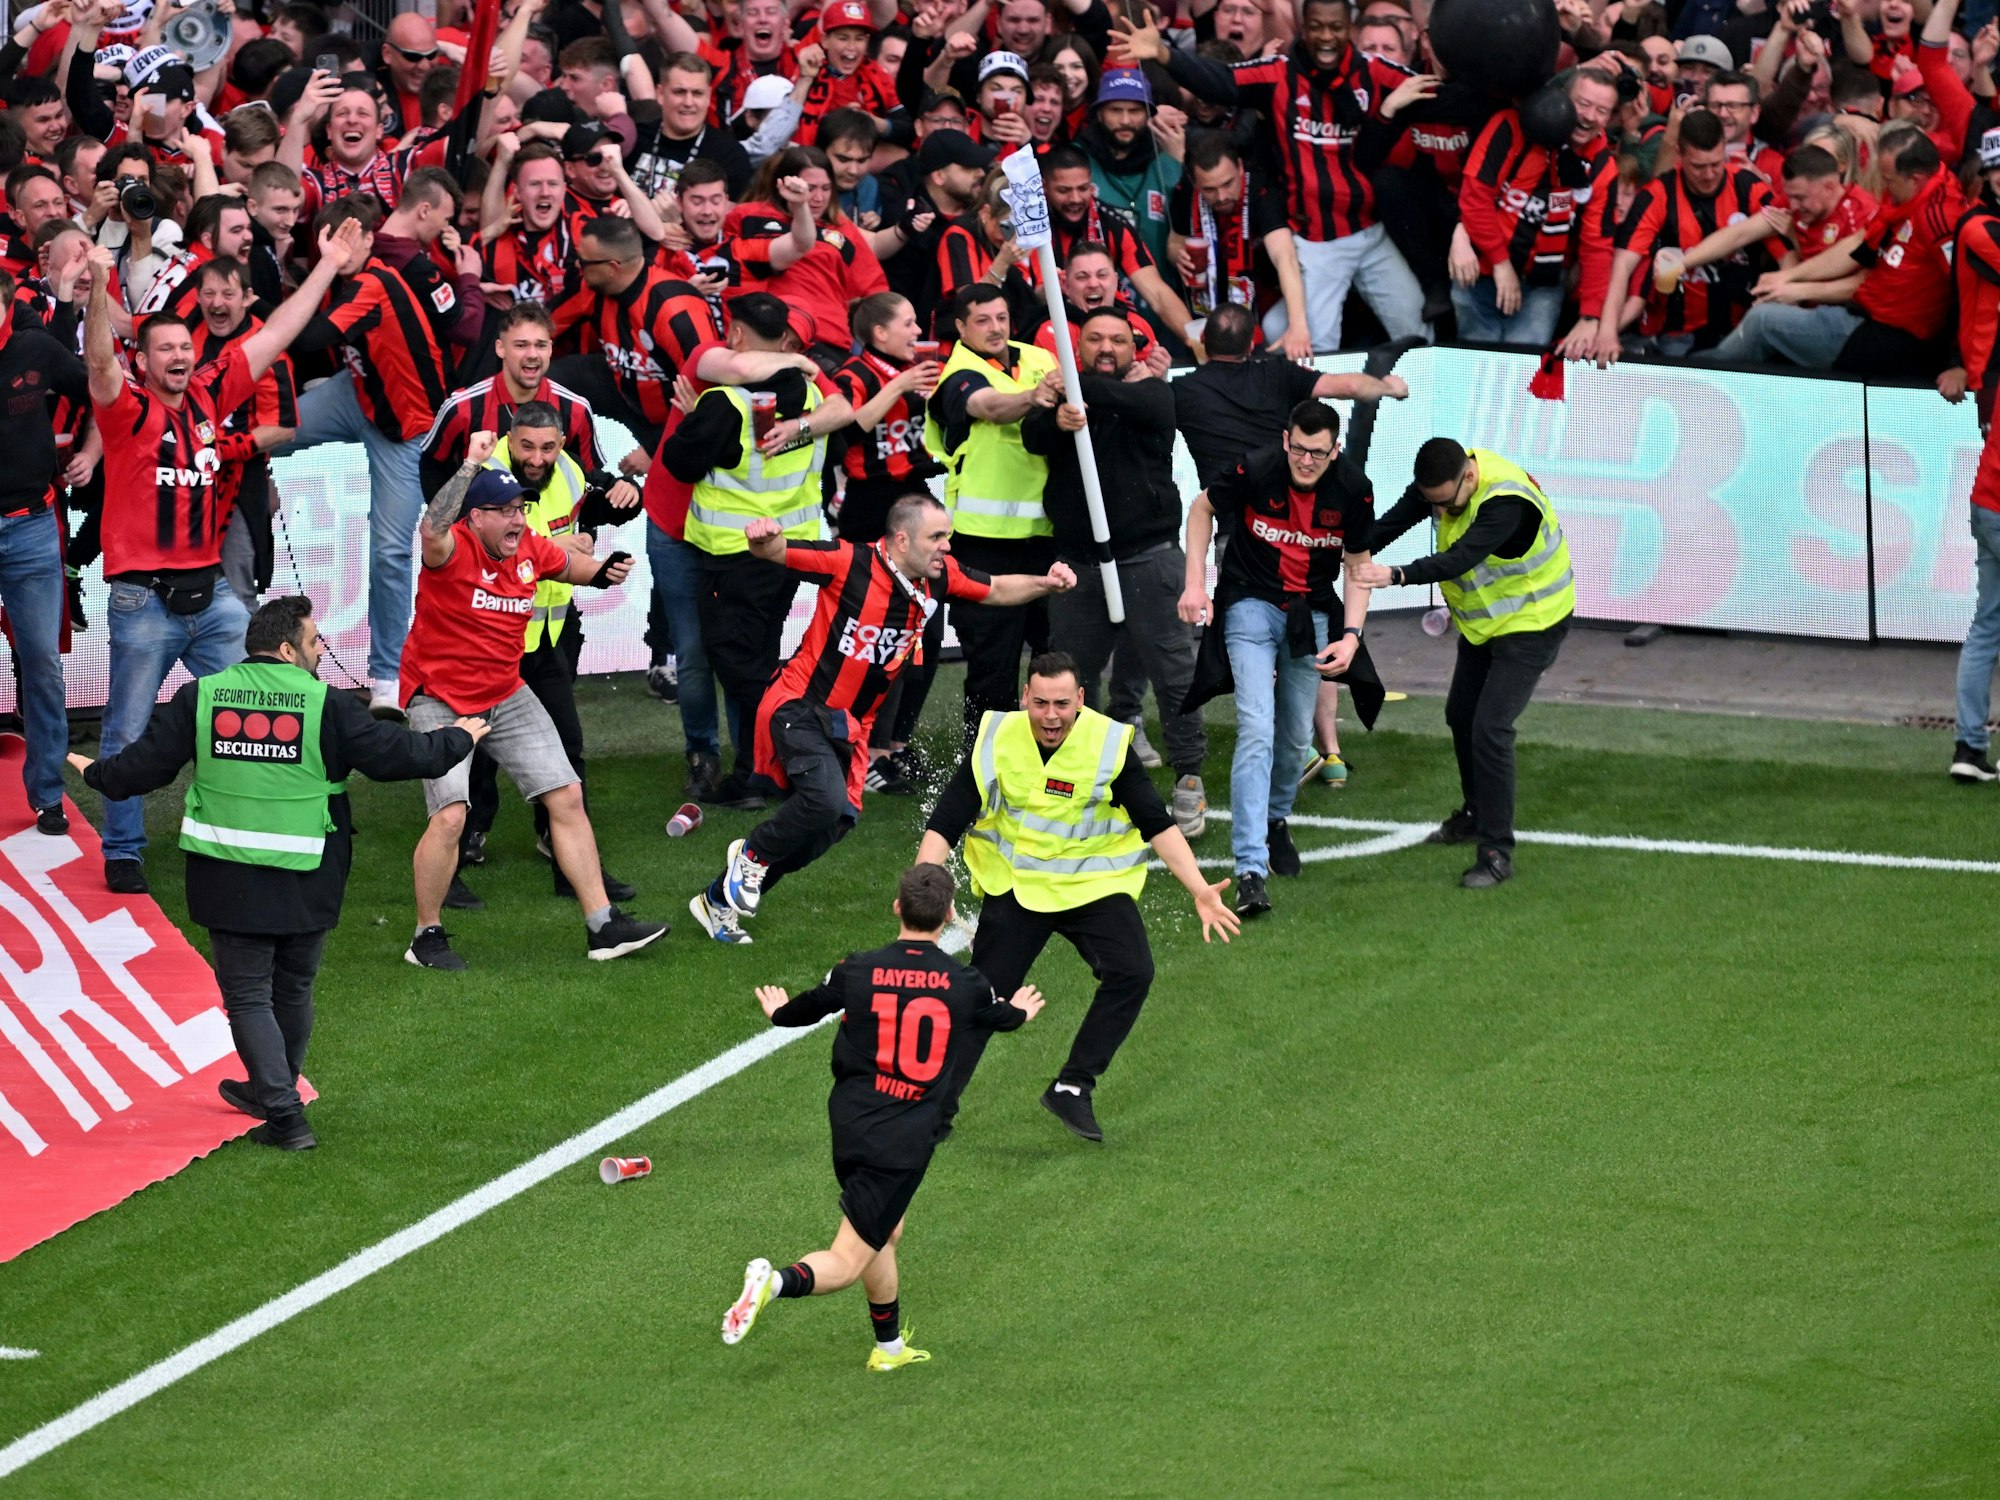 Leverkusens Florian Wirtz dreht nach seinem Tor zum 4:0 jubelnd ab und beruhigt Fans und Sicherheitspersonal, die auf das Spielfeld laufen.